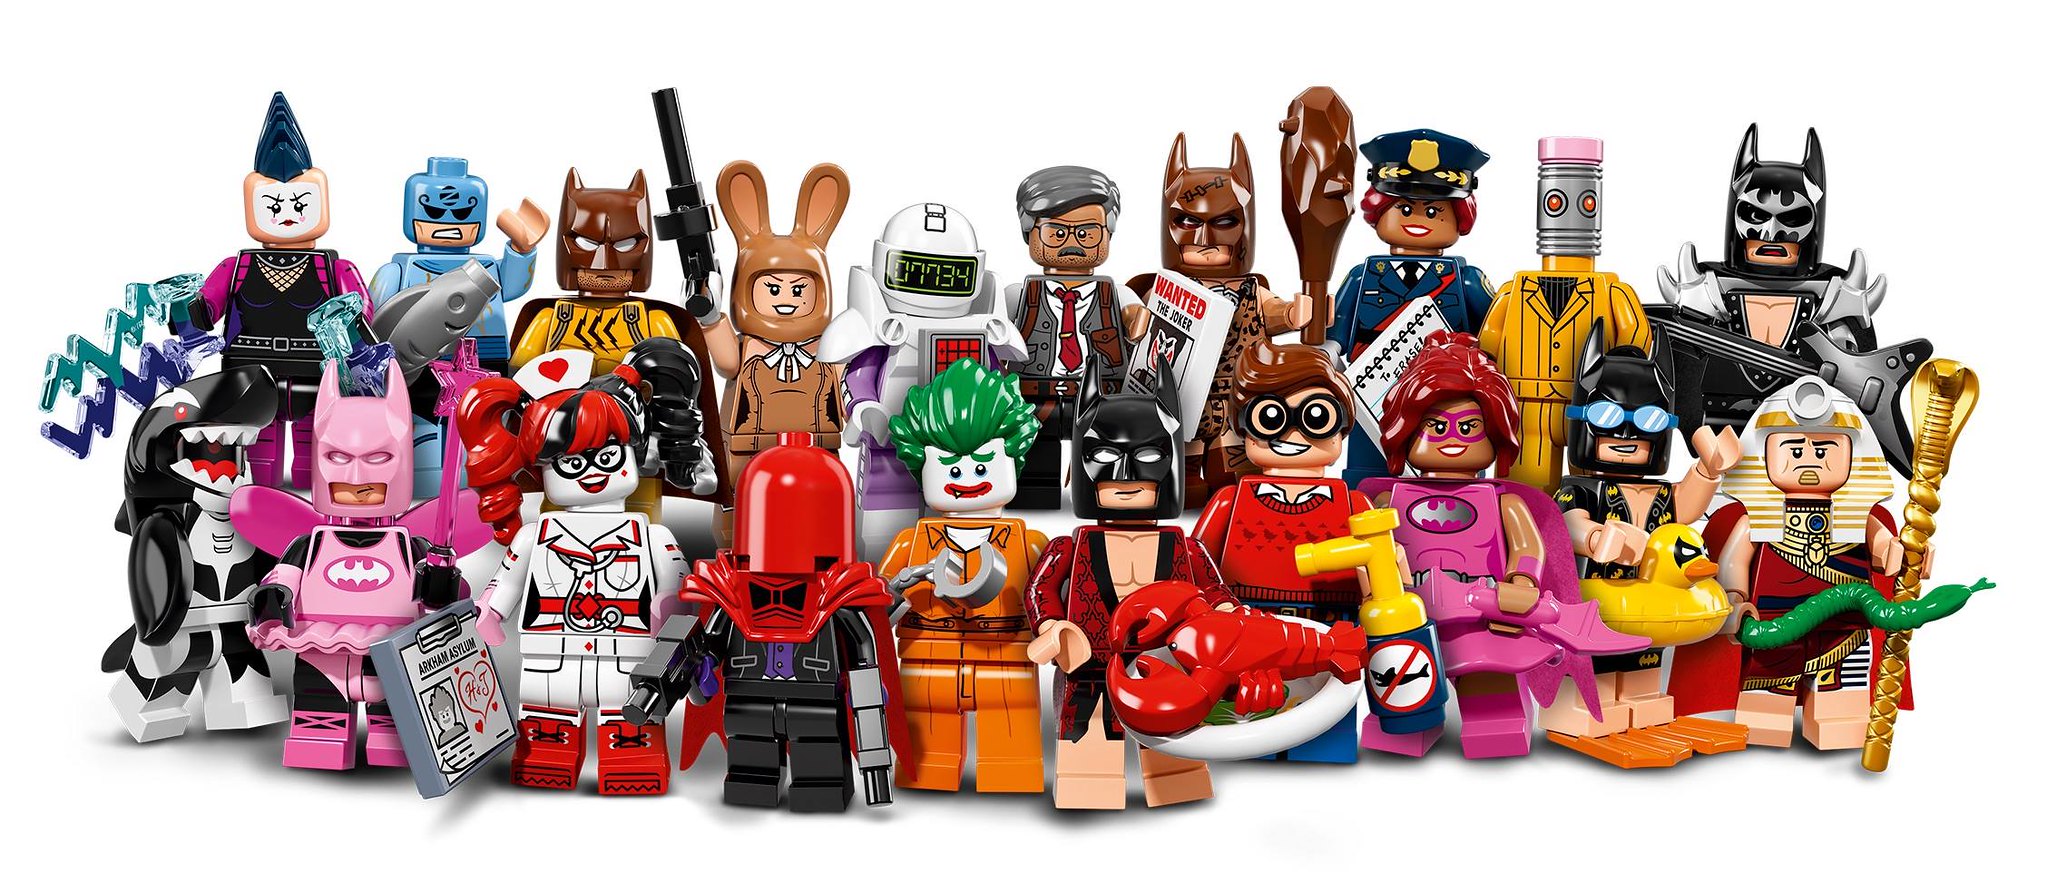 LEGO Batman Movie Collectible Minifigures